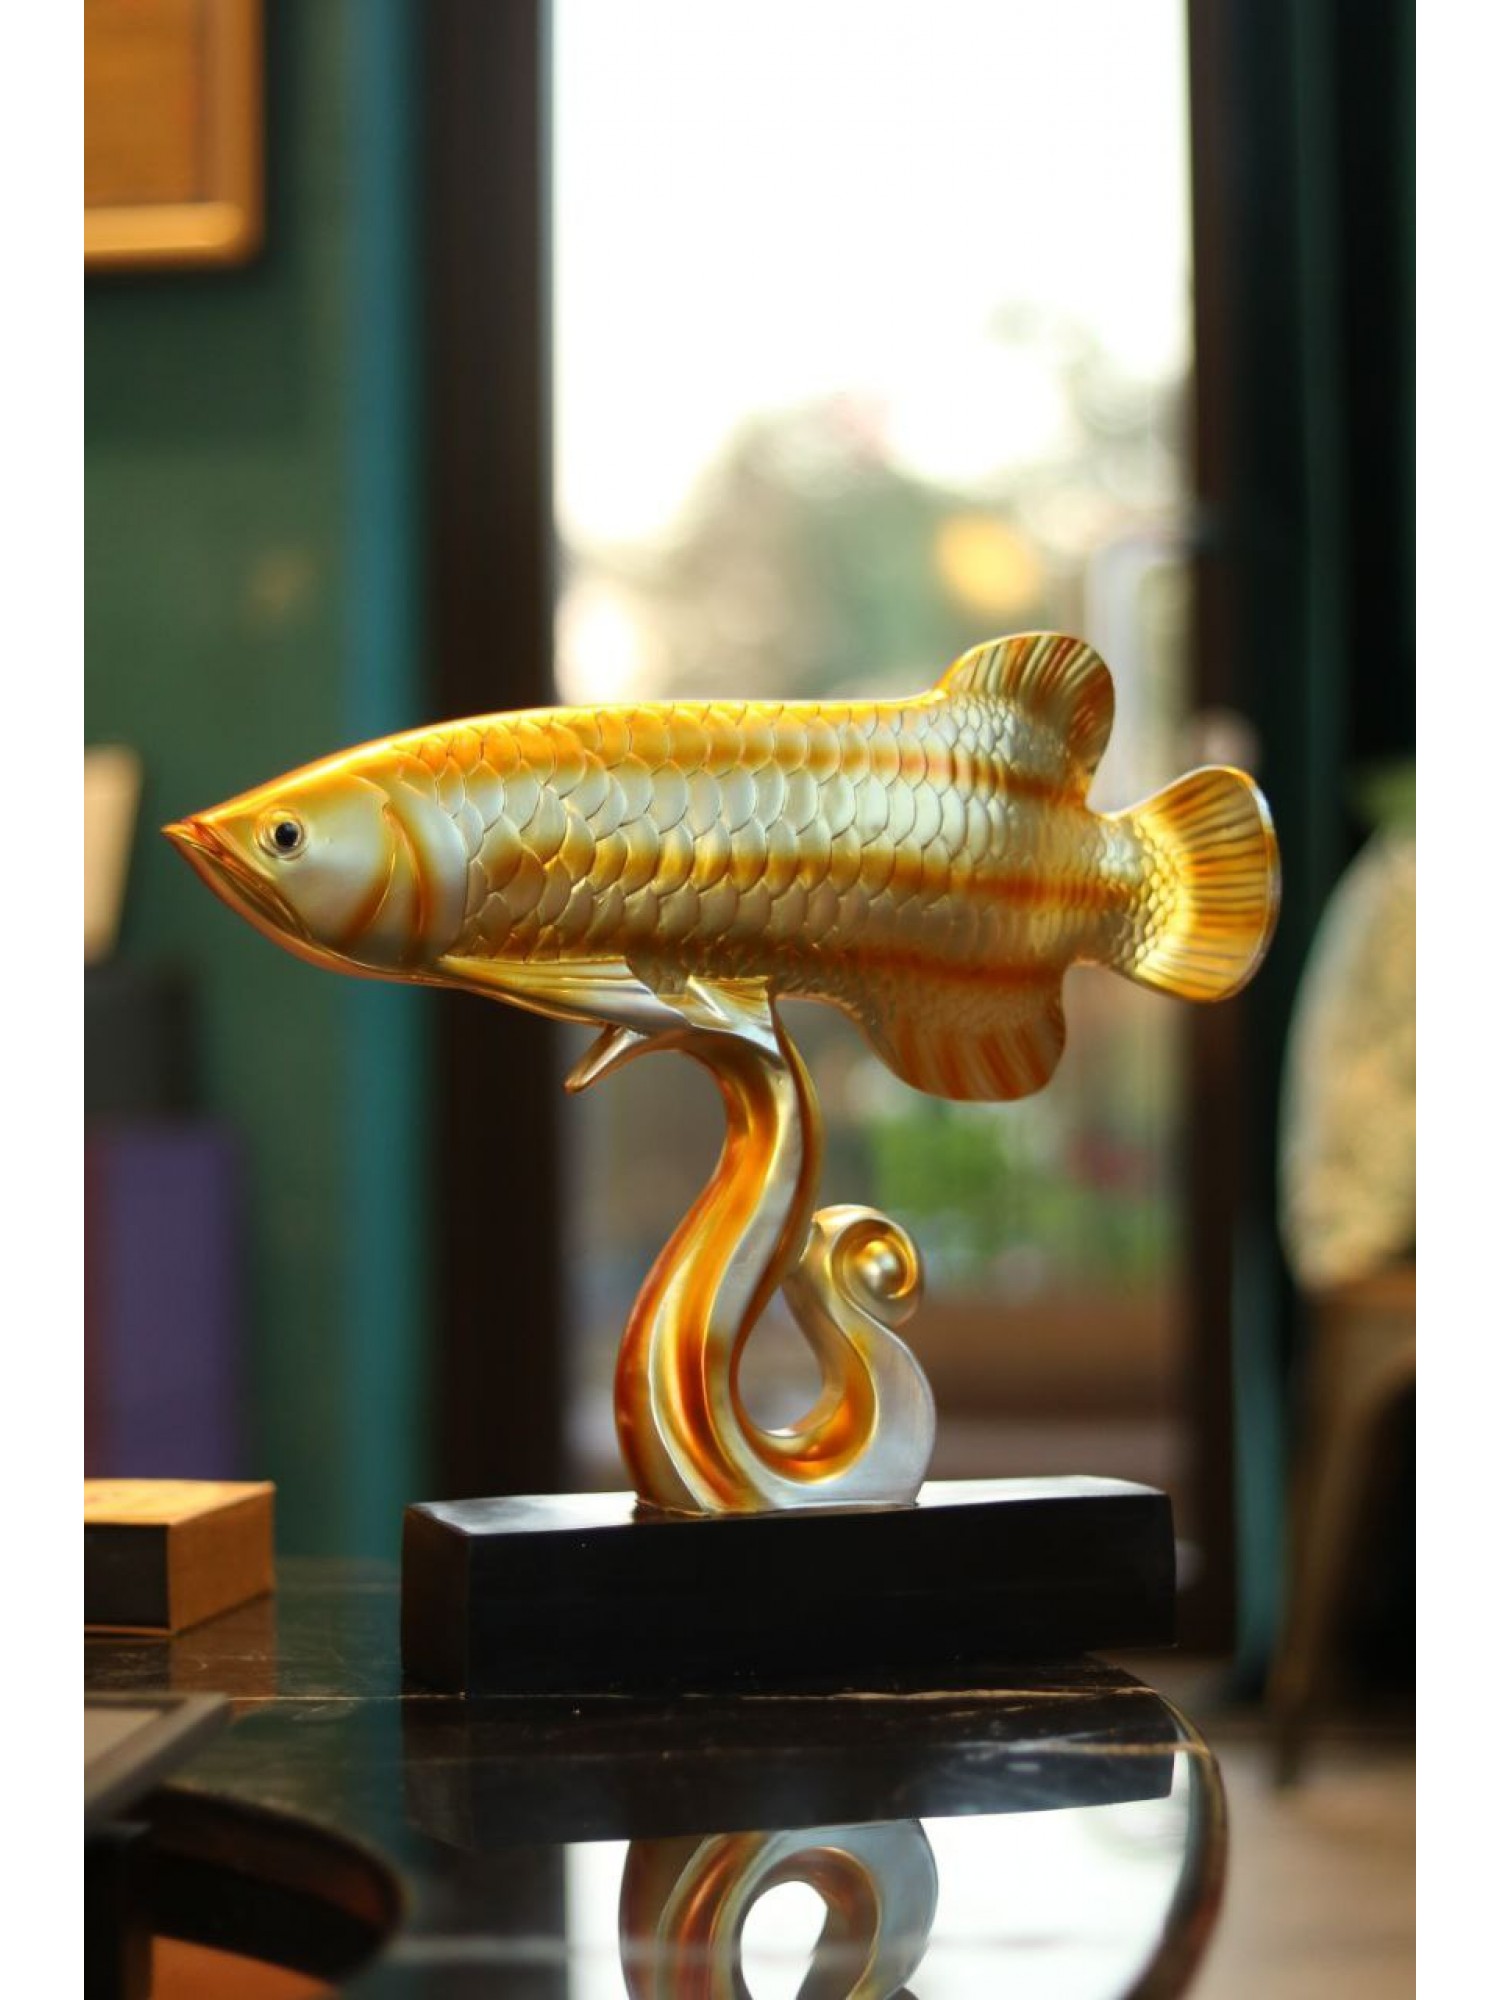 Статуэтка "Арована рыба миллионеров" на волне (желтая) привлекает большое богатство!